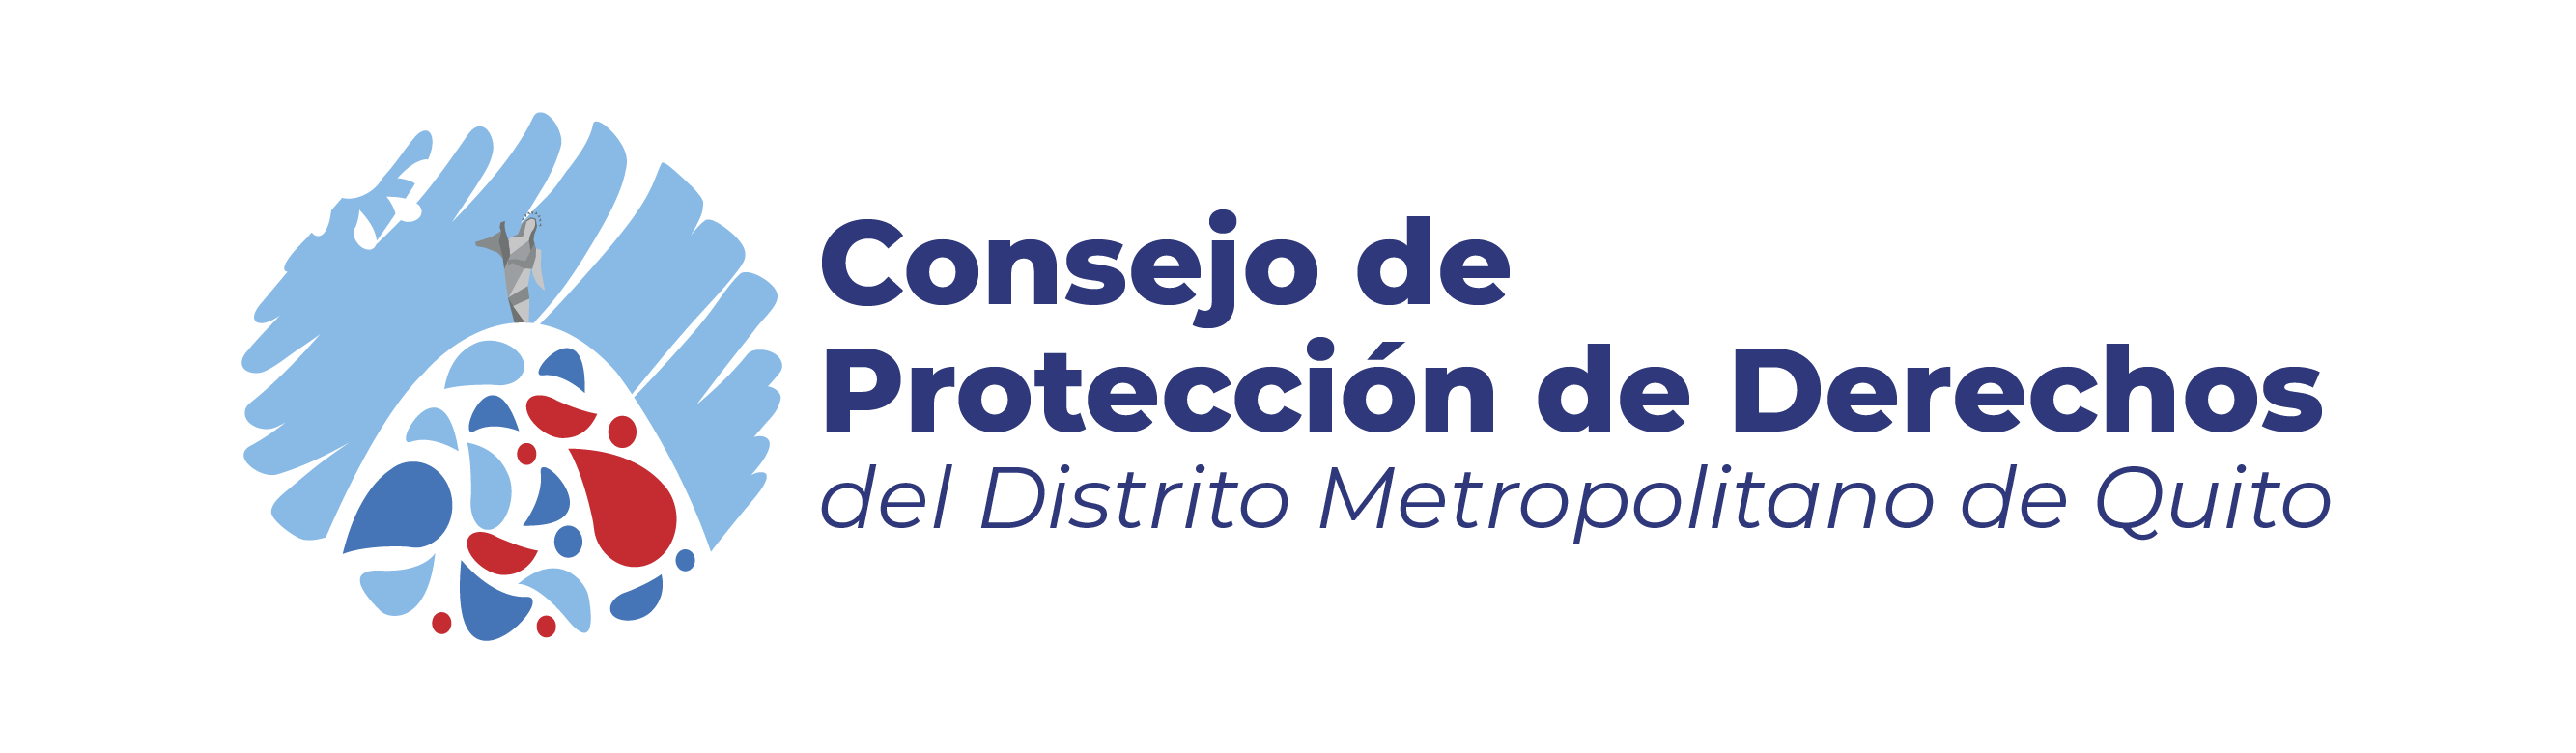 Bienvenidos a la aula virtual del Consejo de Proteccion de Derechos Quito